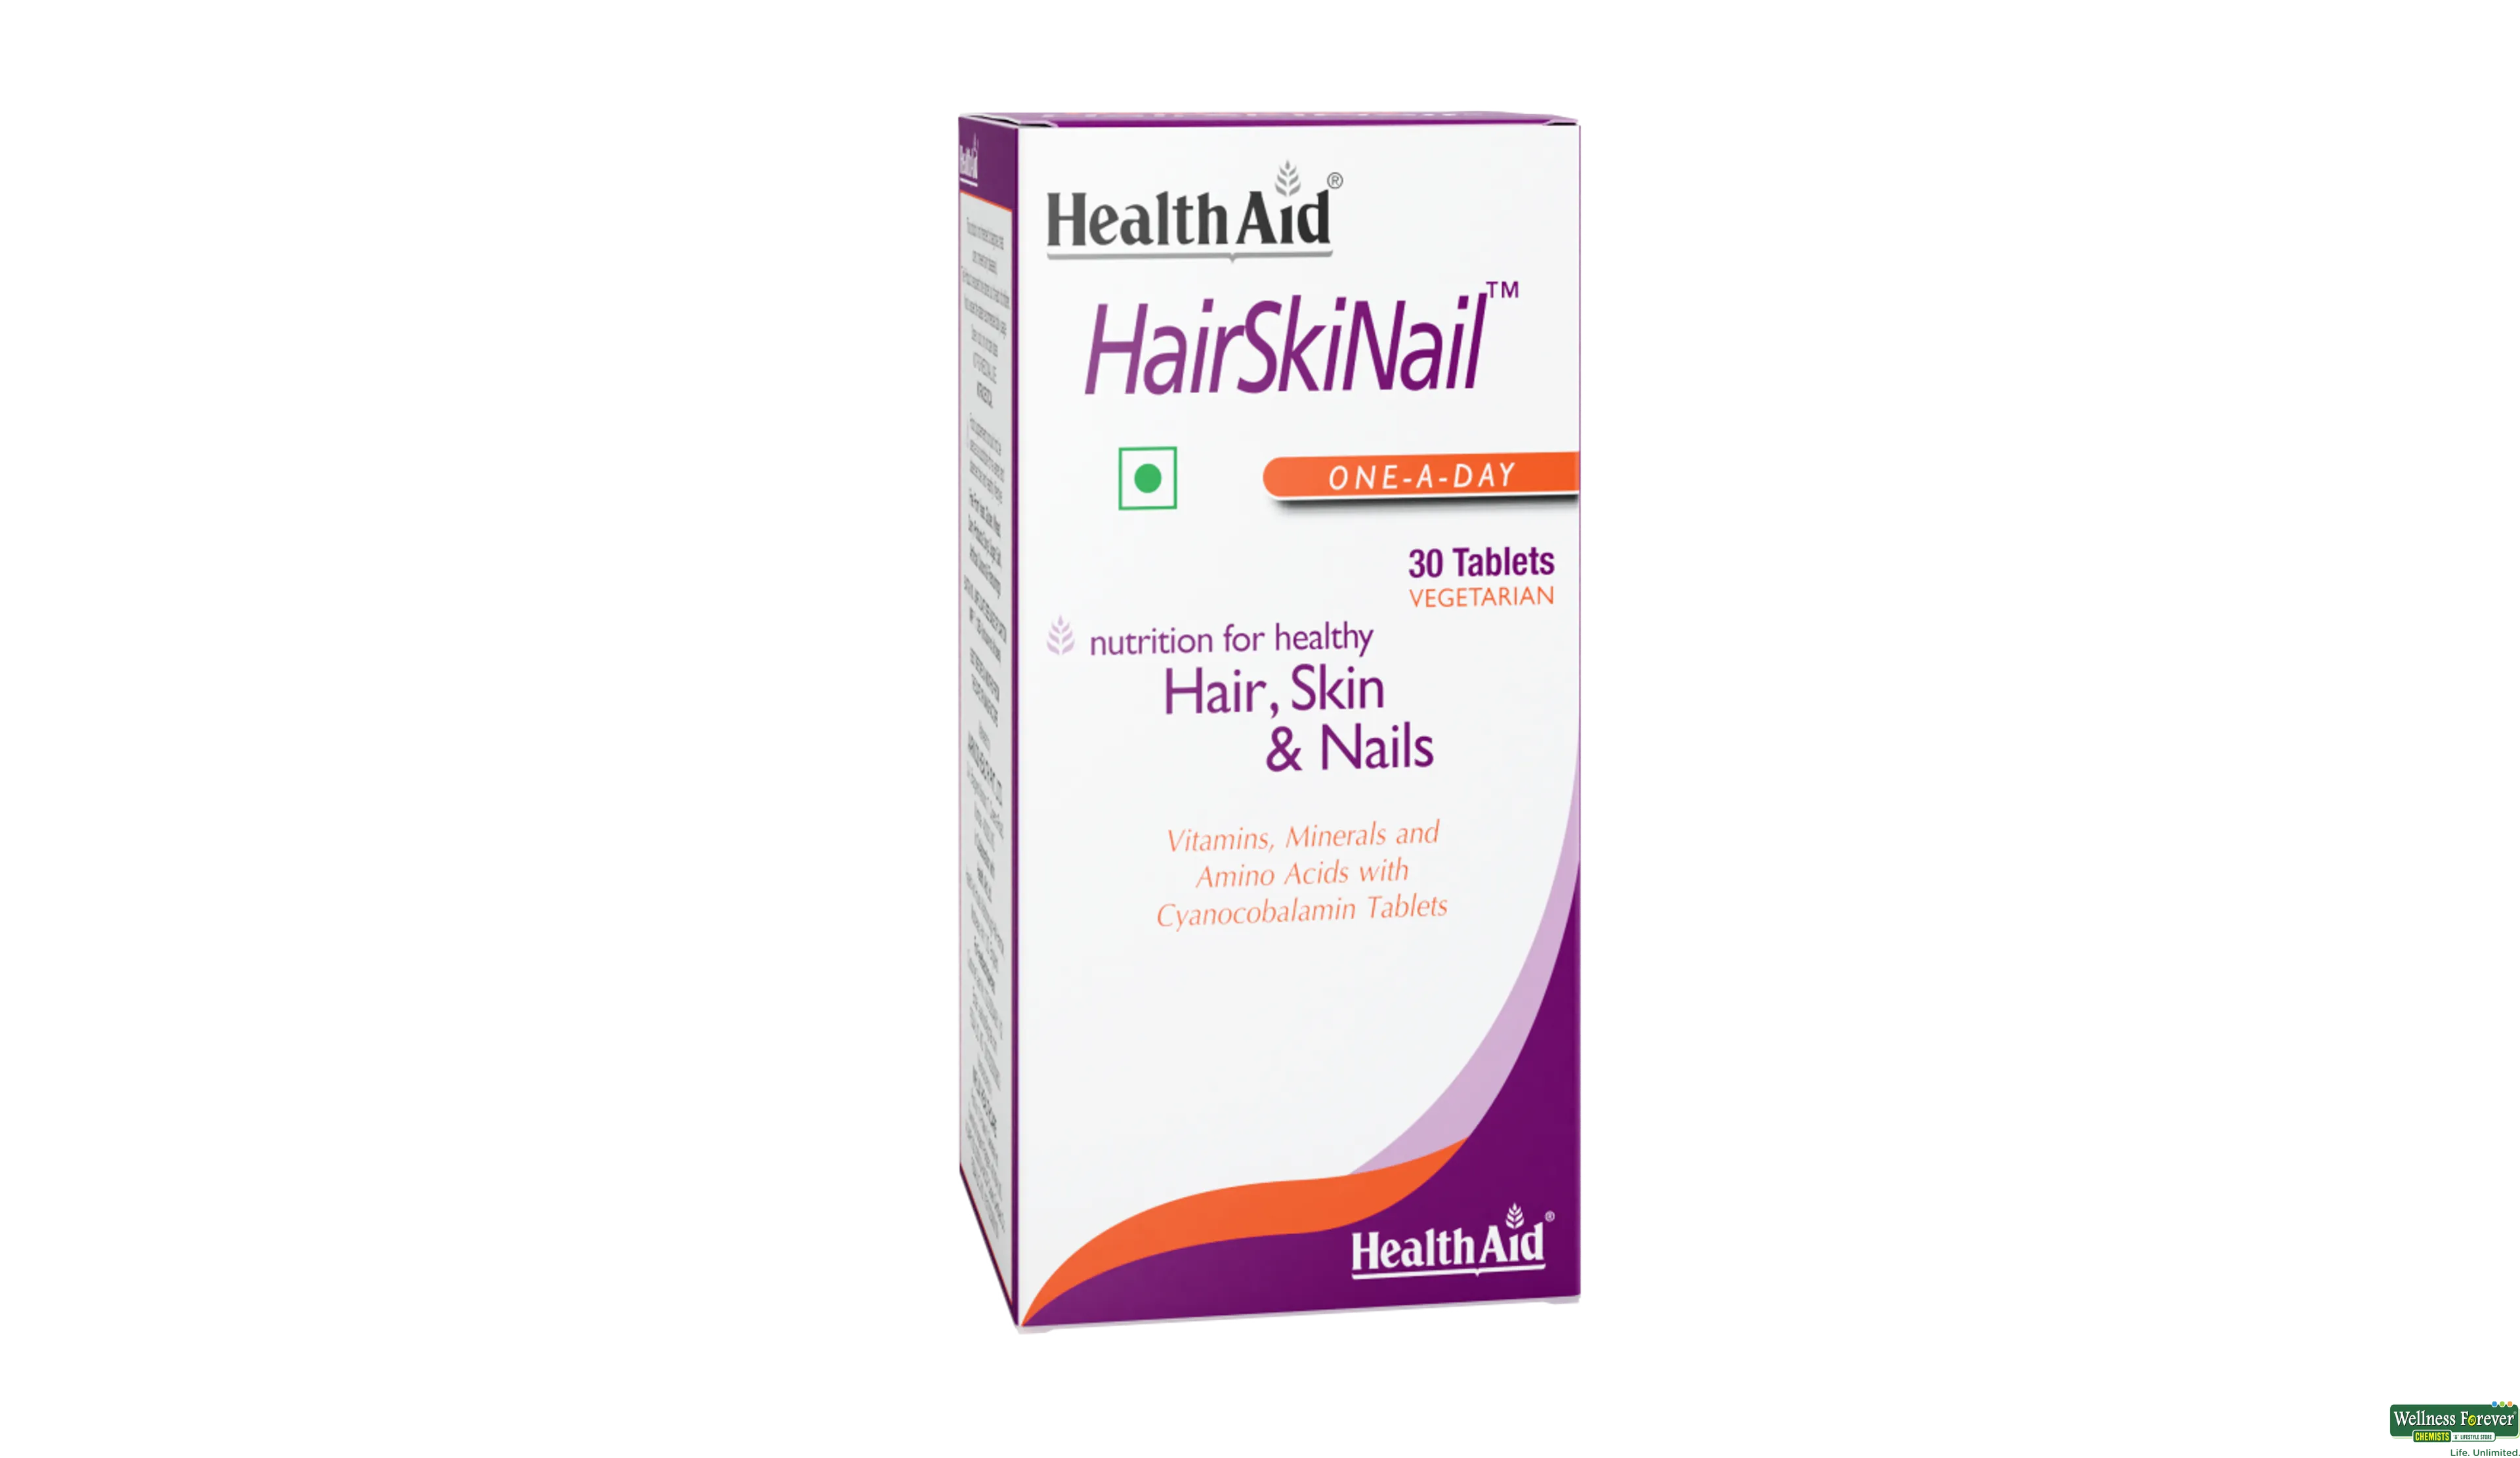 HEALTH AID HAIR/SKIN/NAIL 30TAB- 1, 30TAB, 